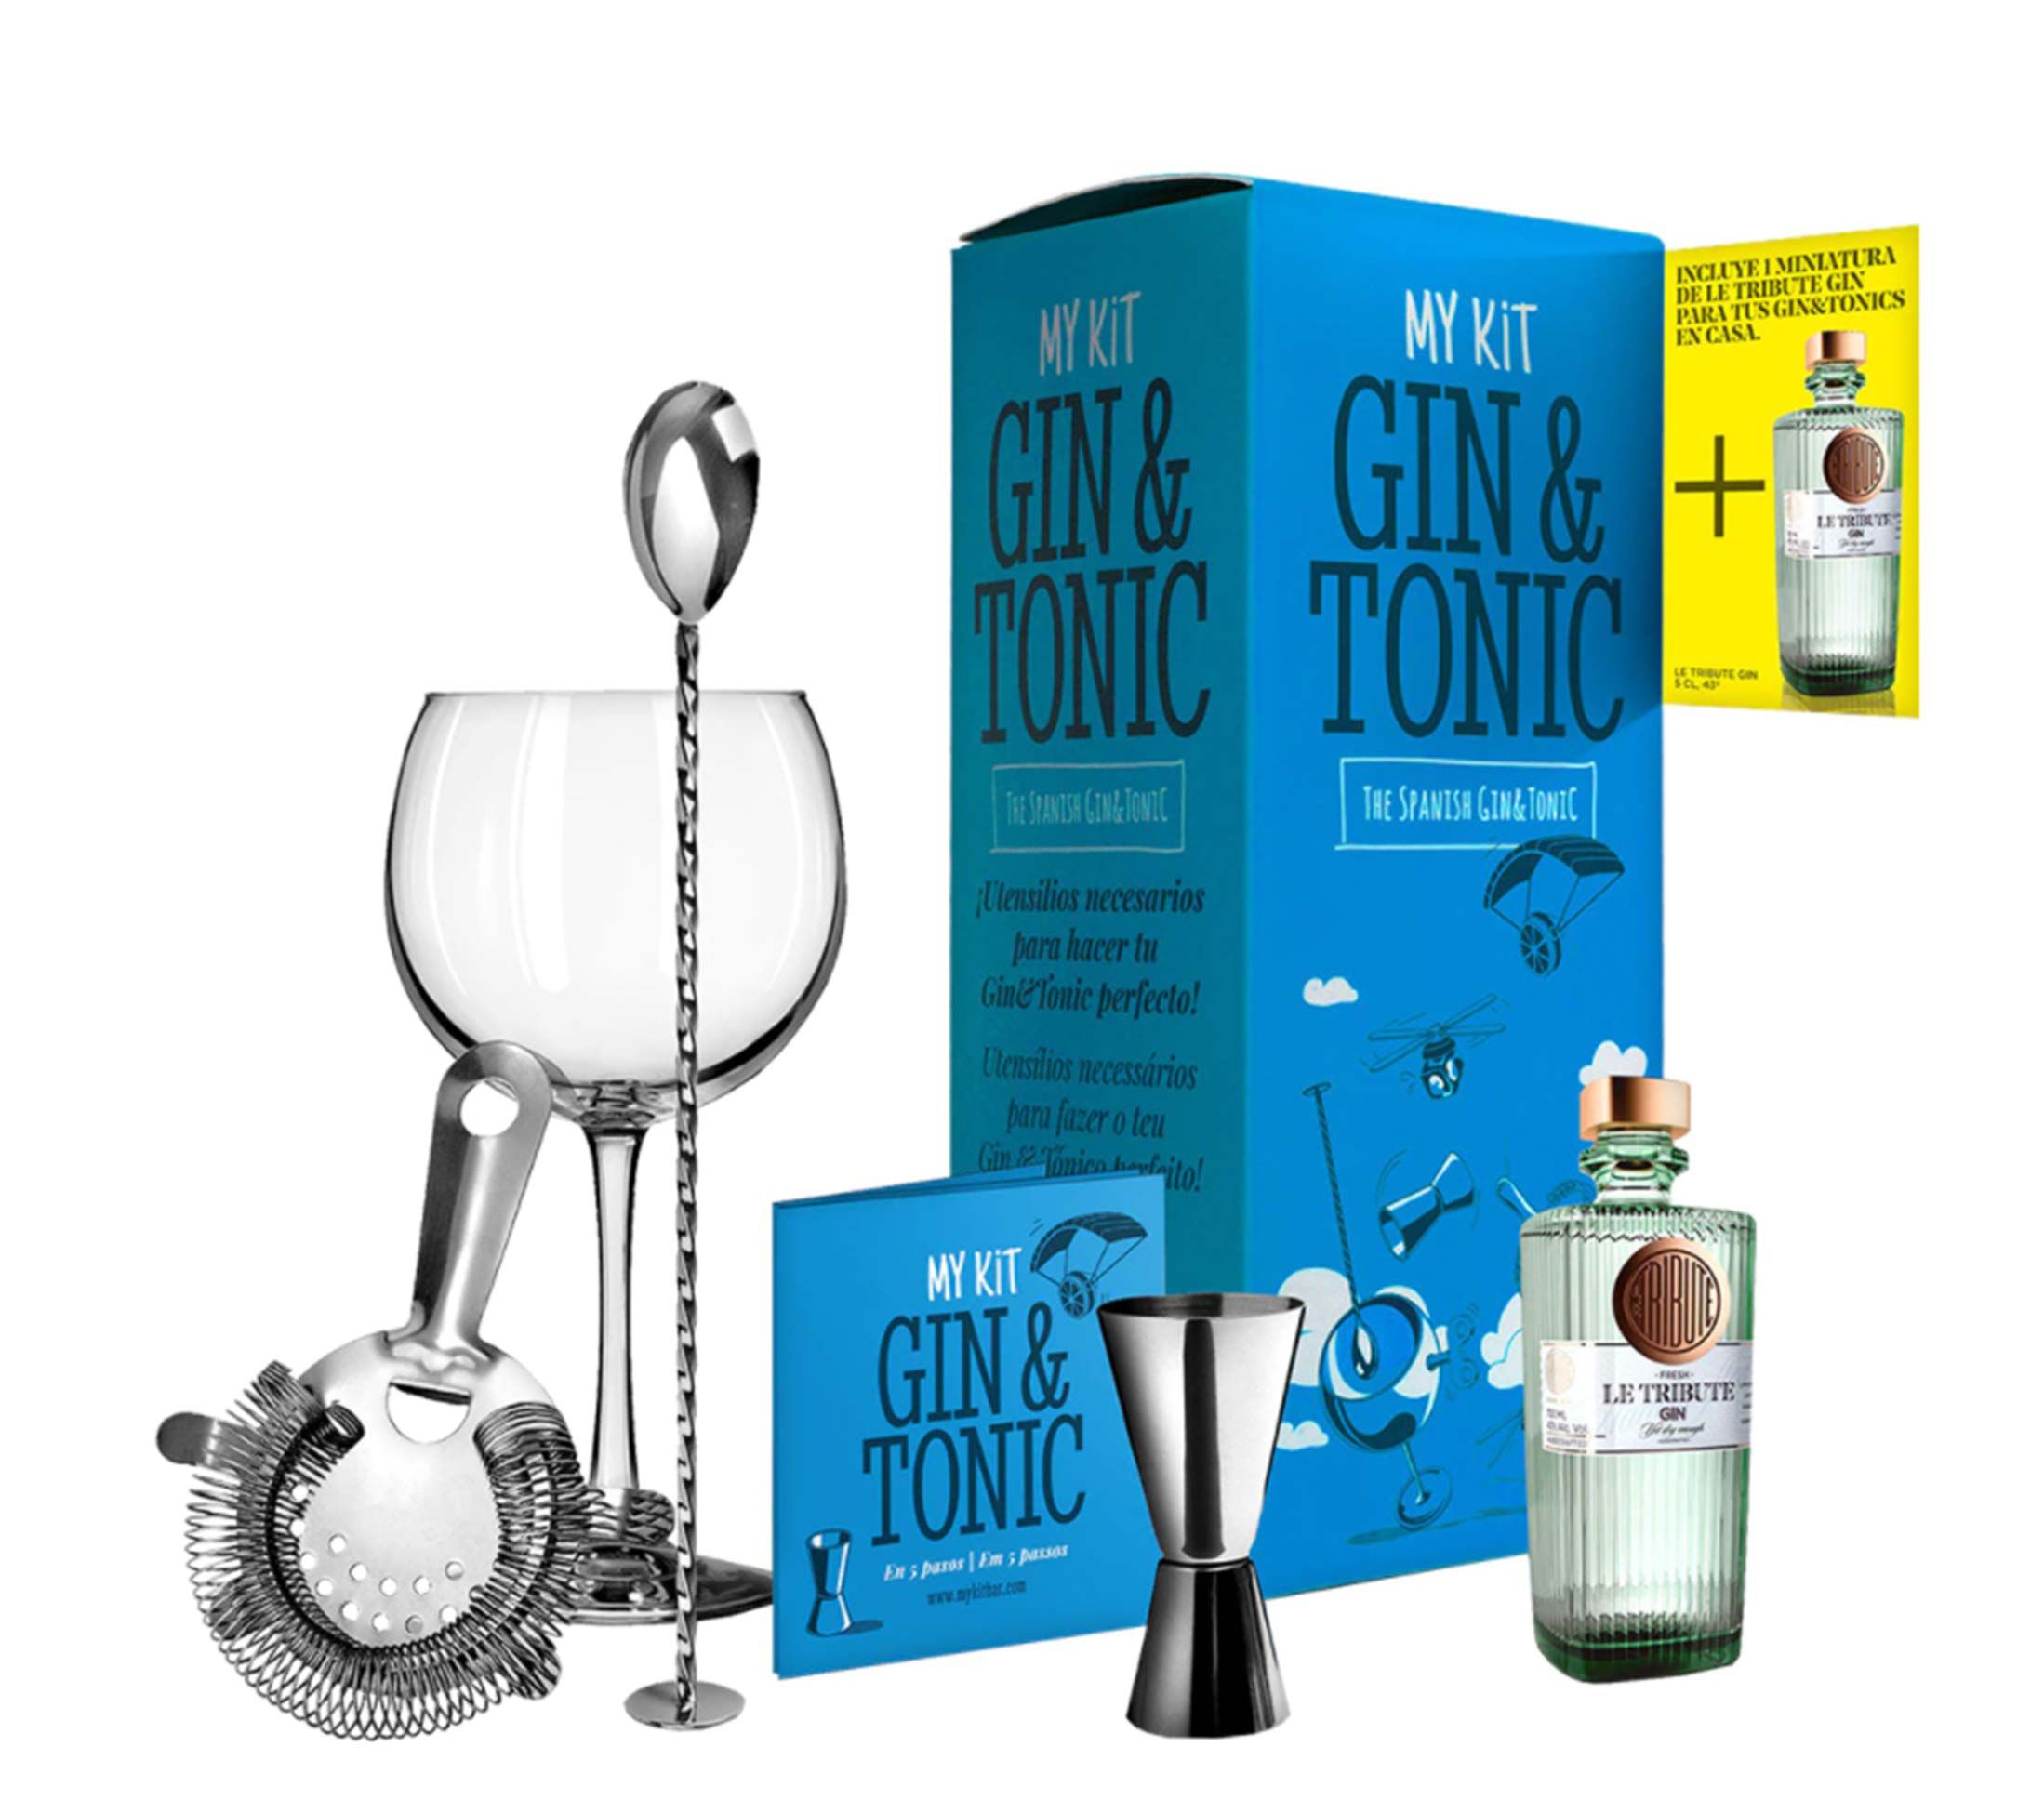 Gin Tonic perfecto consejos para prepararlo - DIVINA COCINA